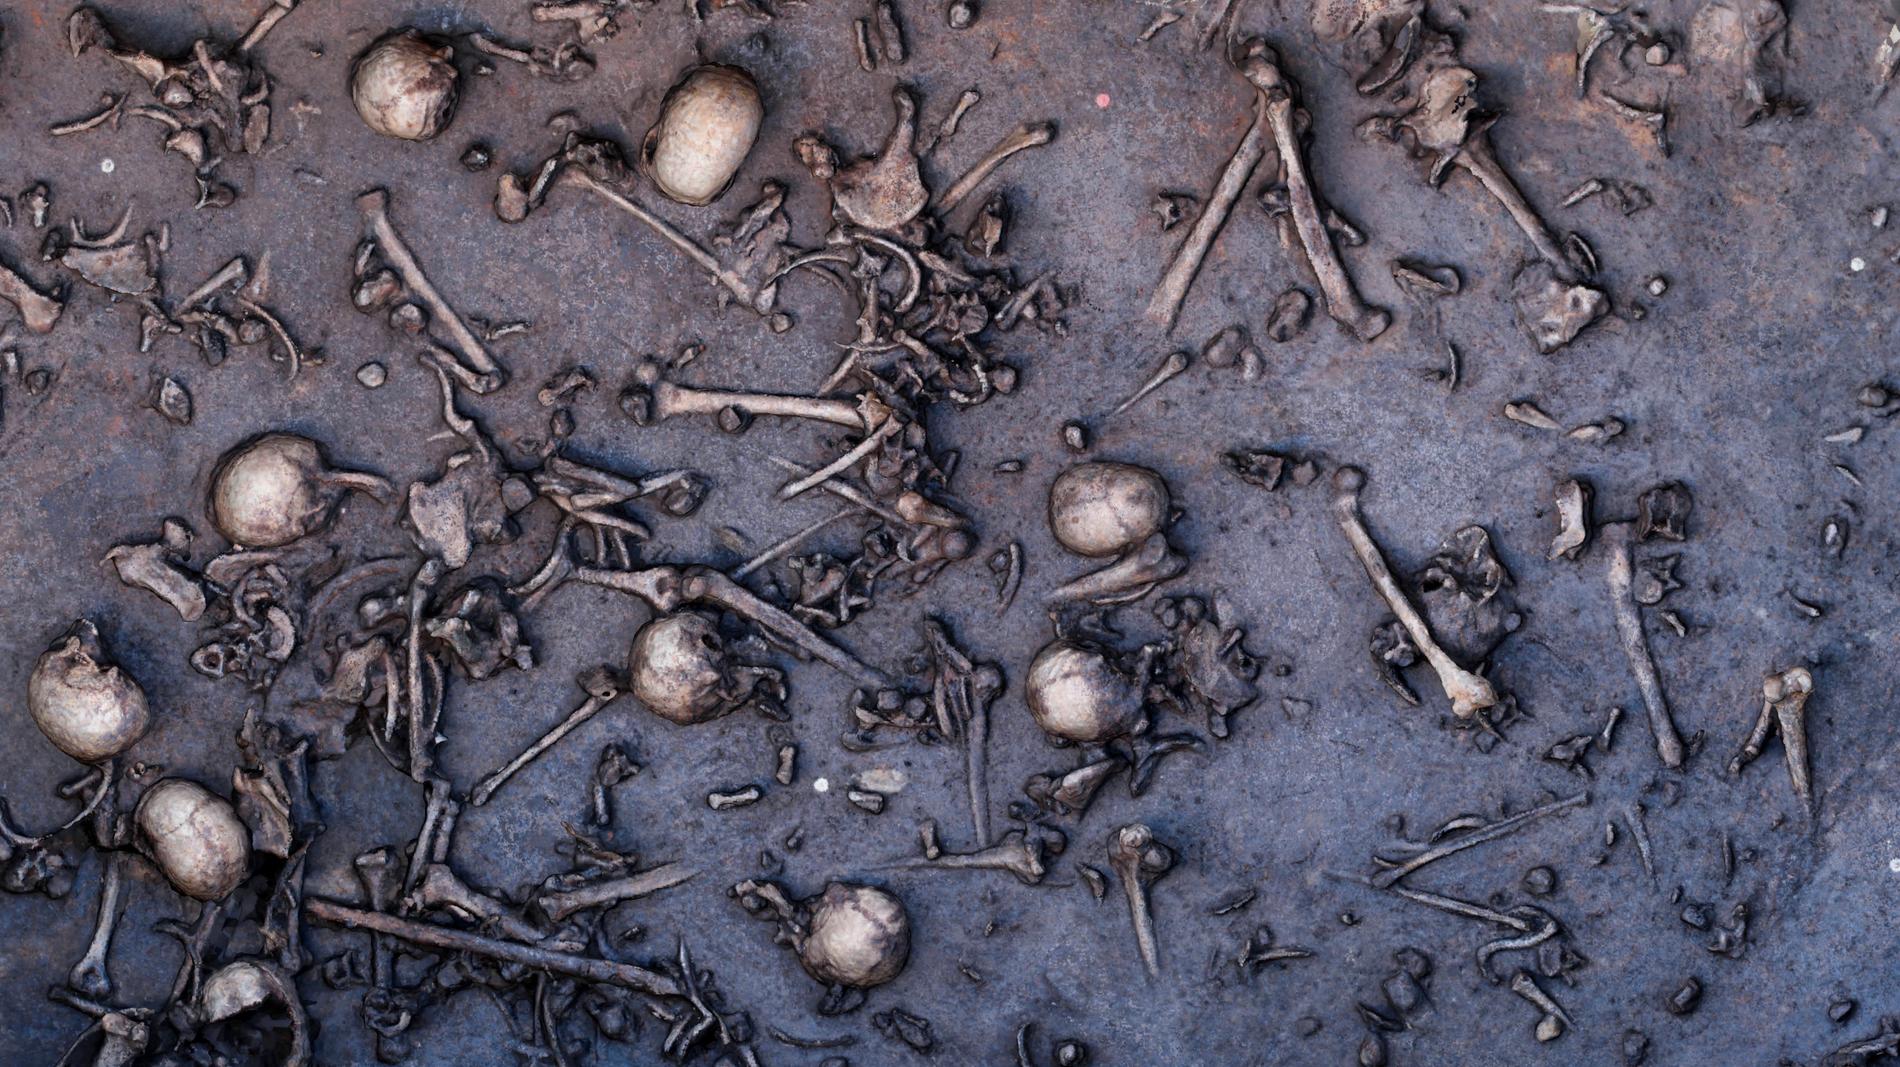 Slaget var mycket blodigt. På sina håll låg de döda tätt intill varandra. På ett tolv kvadratmeter stort område hittade arkeologerna 1 478 ben inklusive 20 kranier. Antagligen var flera tusen krigare involverade i bataljen.